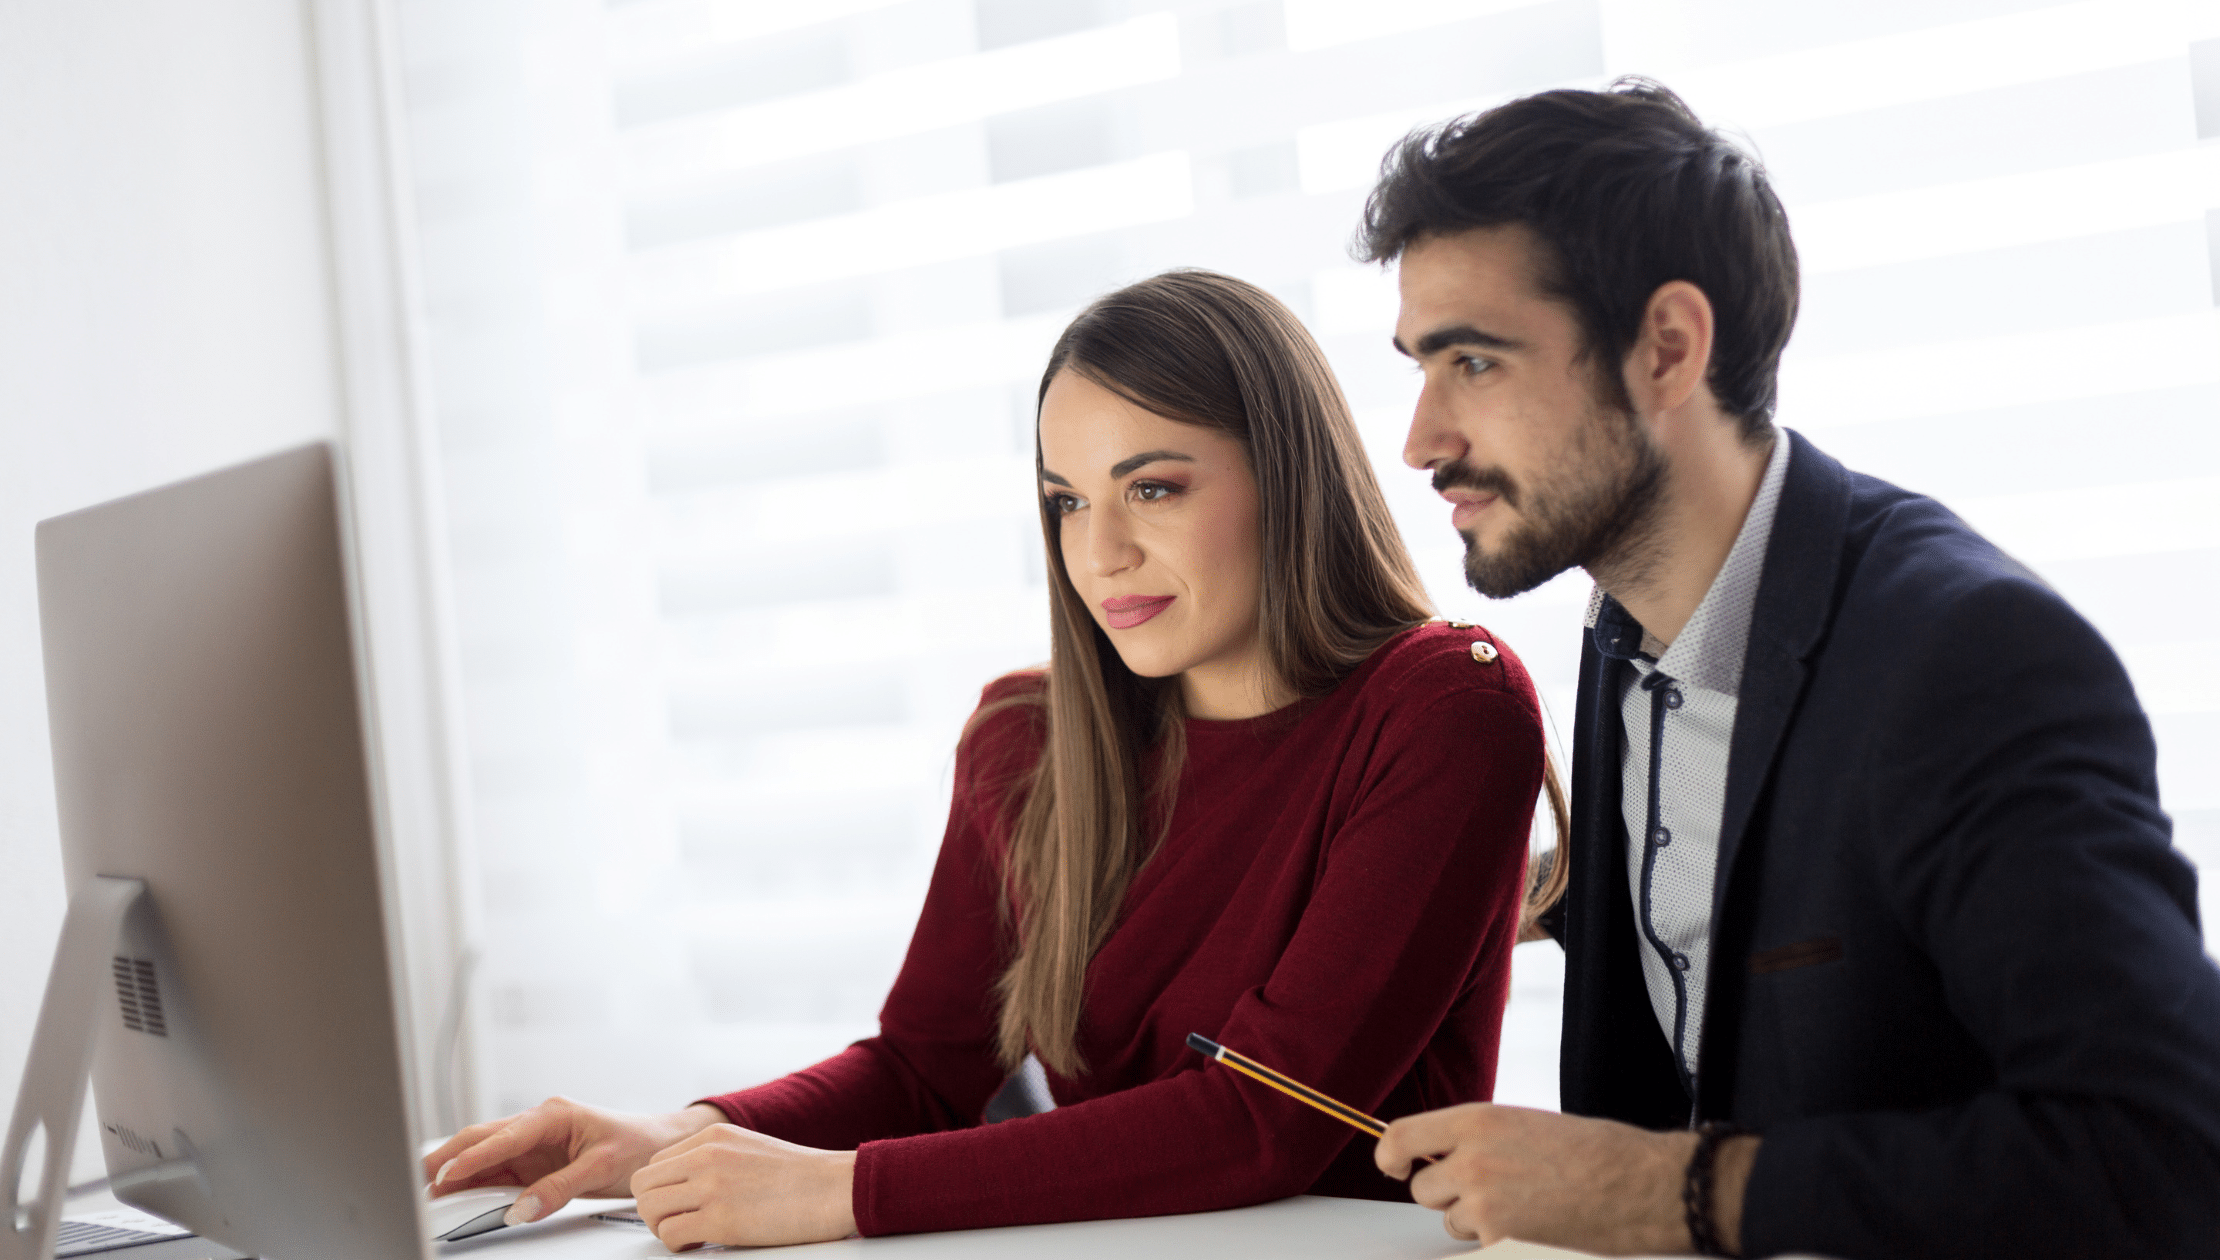 Man and woman looking at computer screen at work.